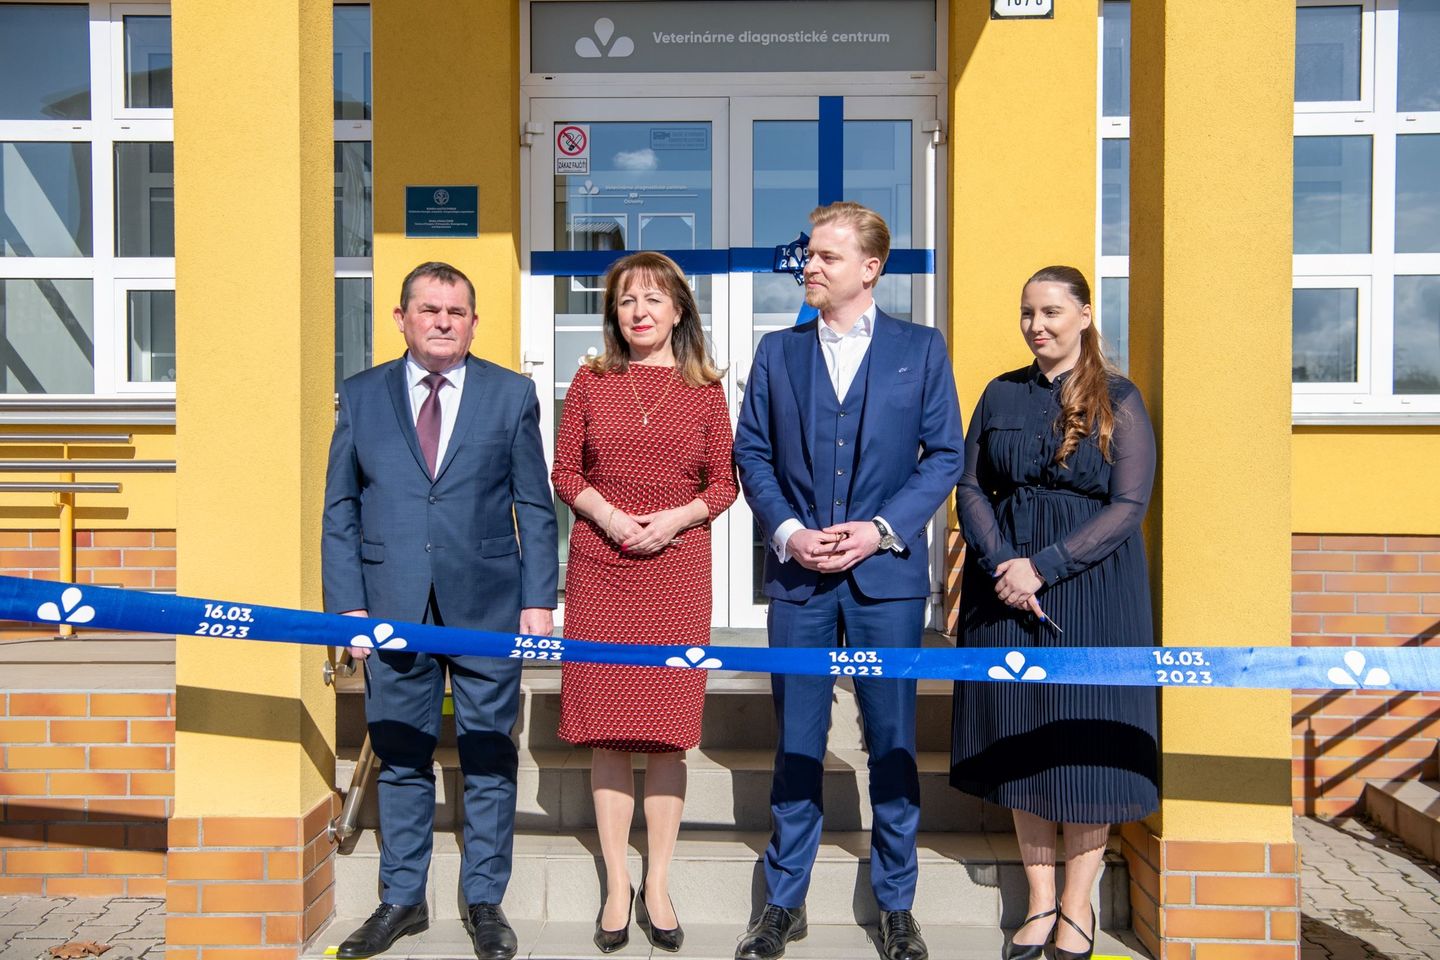 Veterinárne diagnostické centrum v Košiciach je prvým svojho druhu na Slovensku aj v Čechách